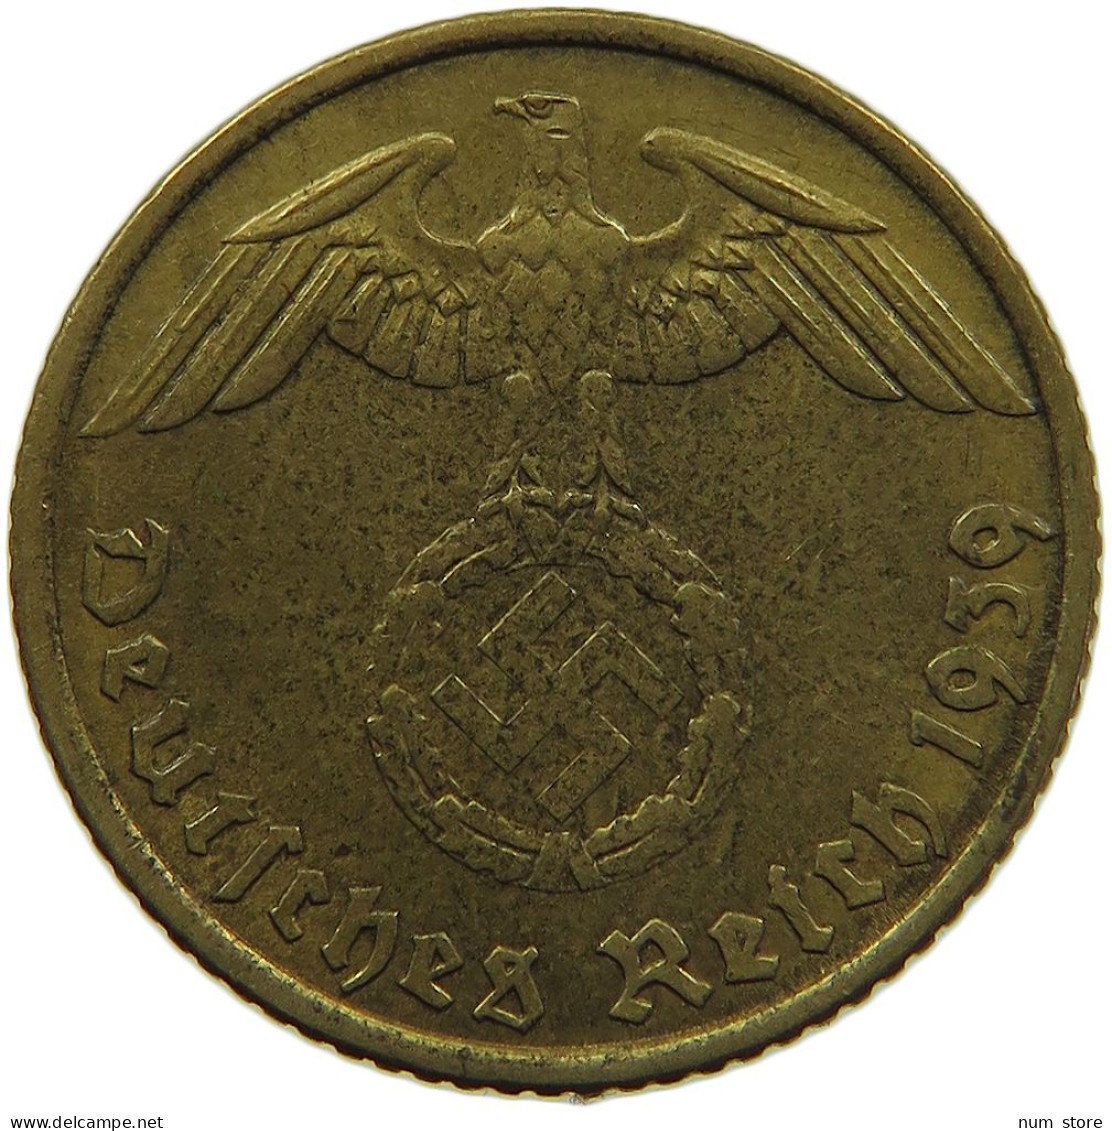 GERMANY 5 REICHSPFENNIG 1939 A #s091 0727 - 5 Reichspfennig